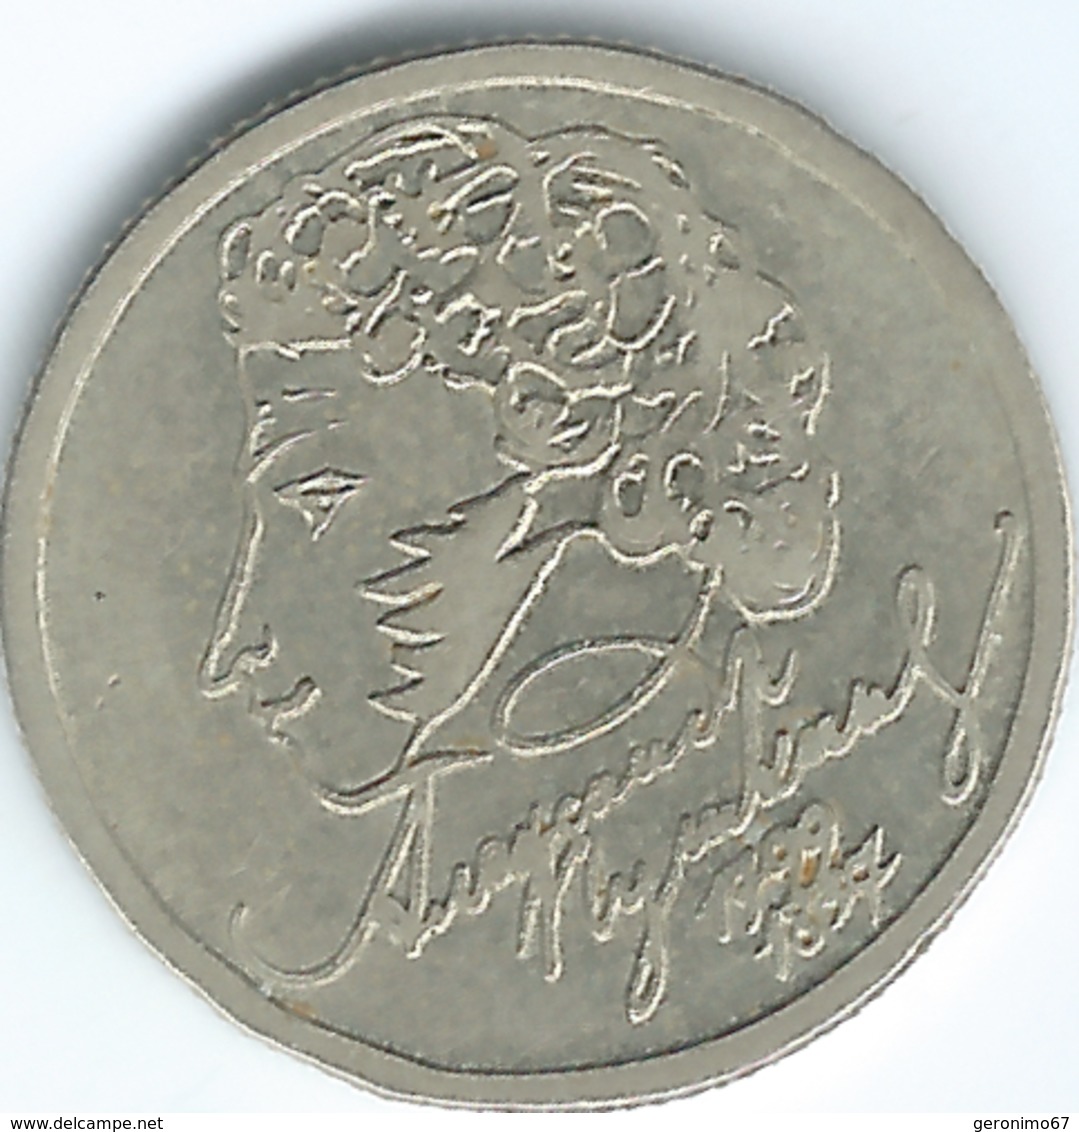 Russia - 1999 - 1 Ruble - 200th Anniversary Of The Birth Of Pushkin - KMY640 - Russia